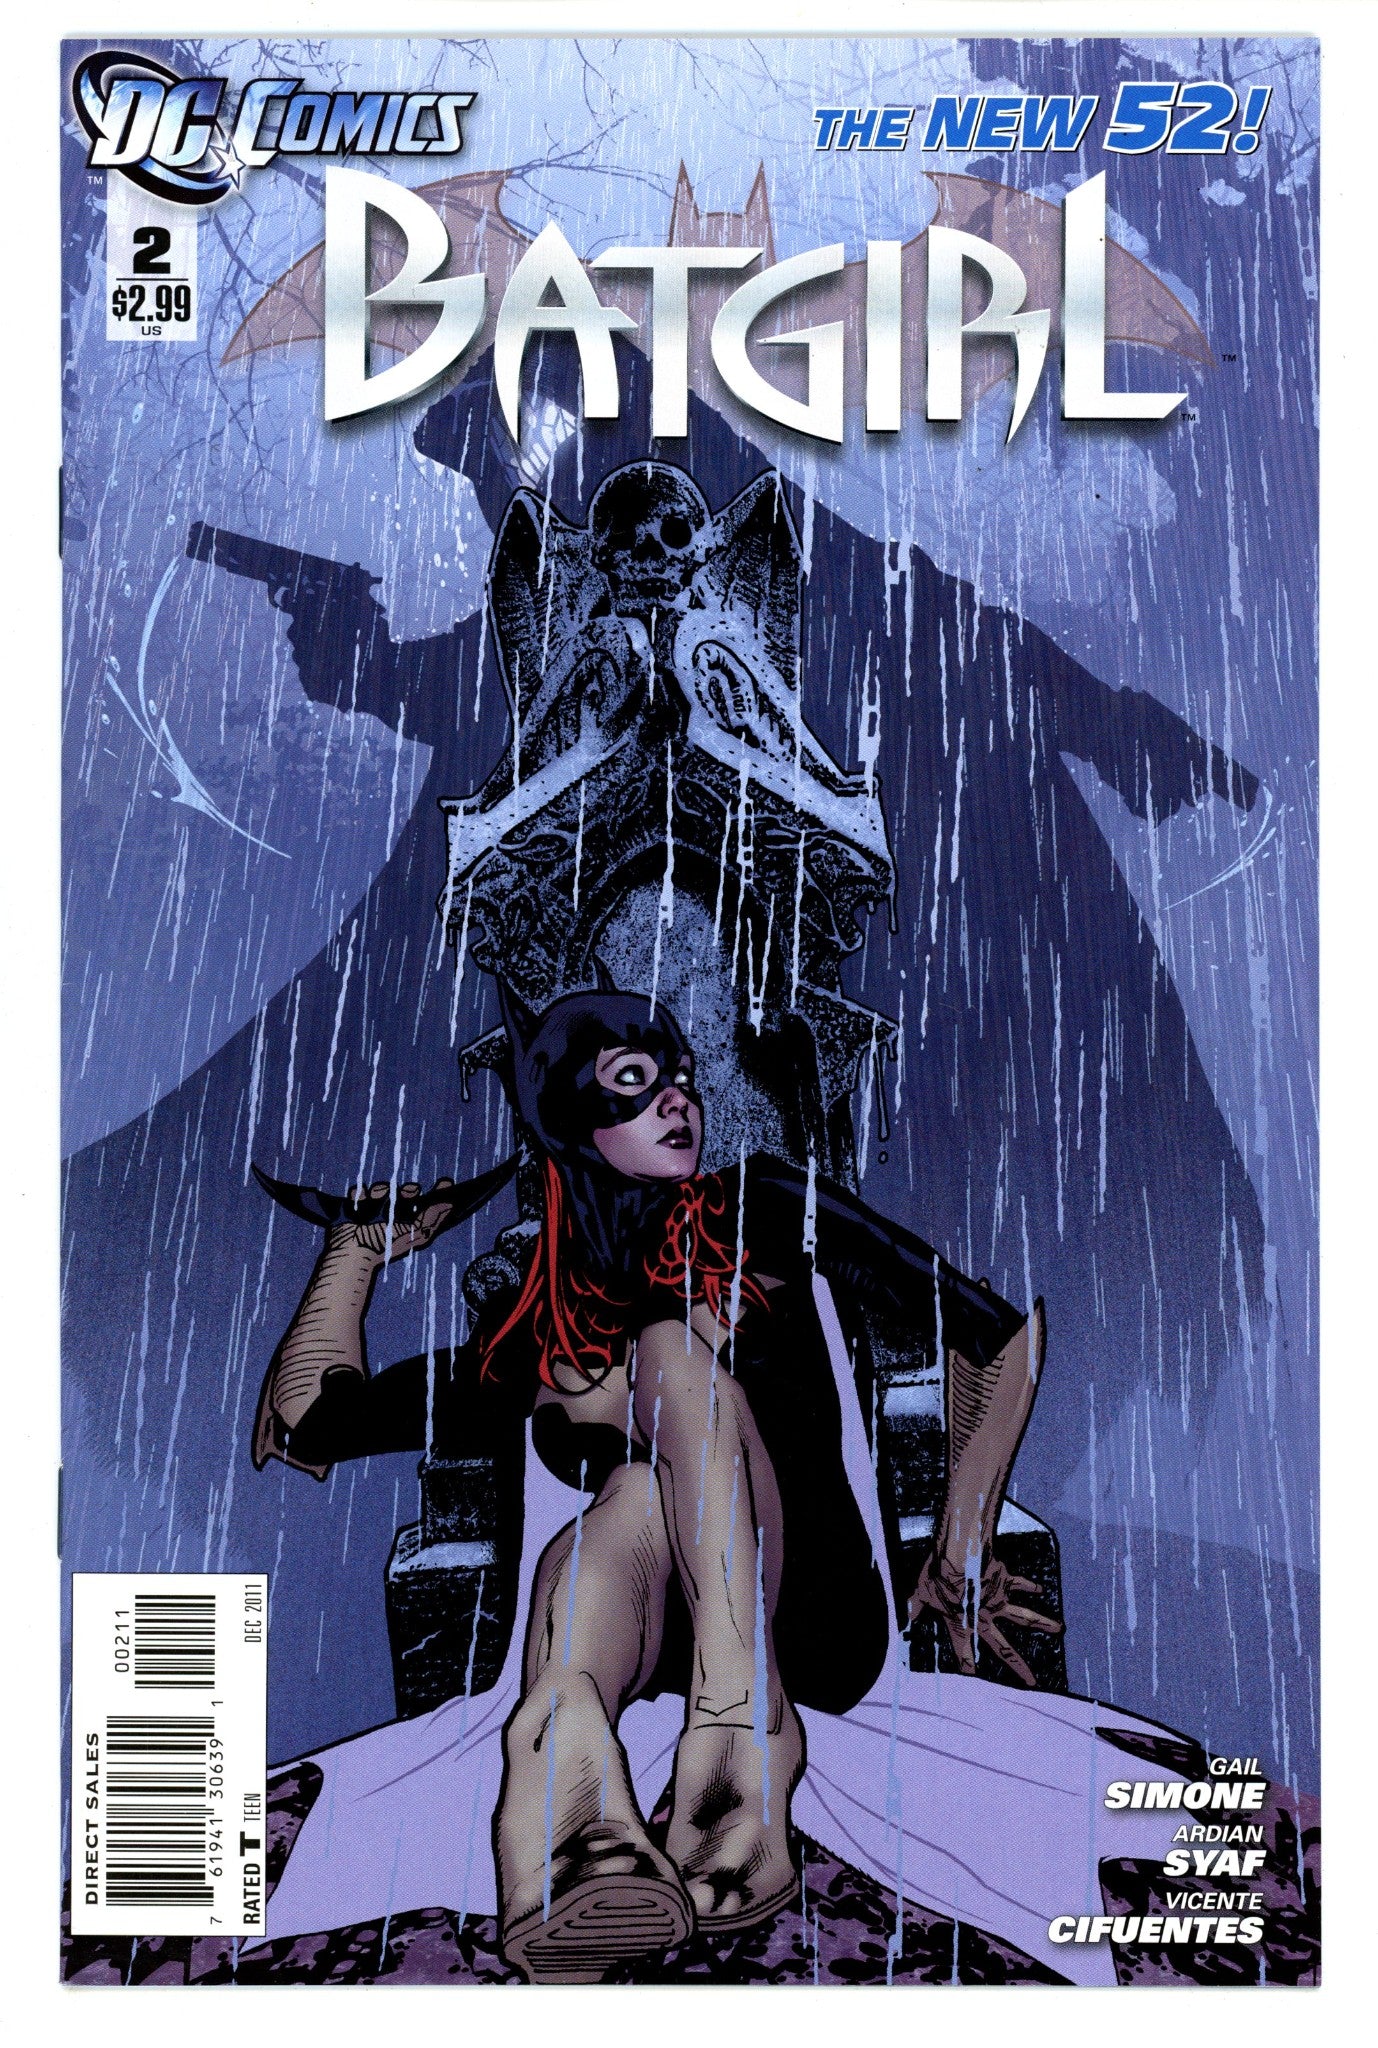 Batgirl Vol 4 2 High Grade (2011) 